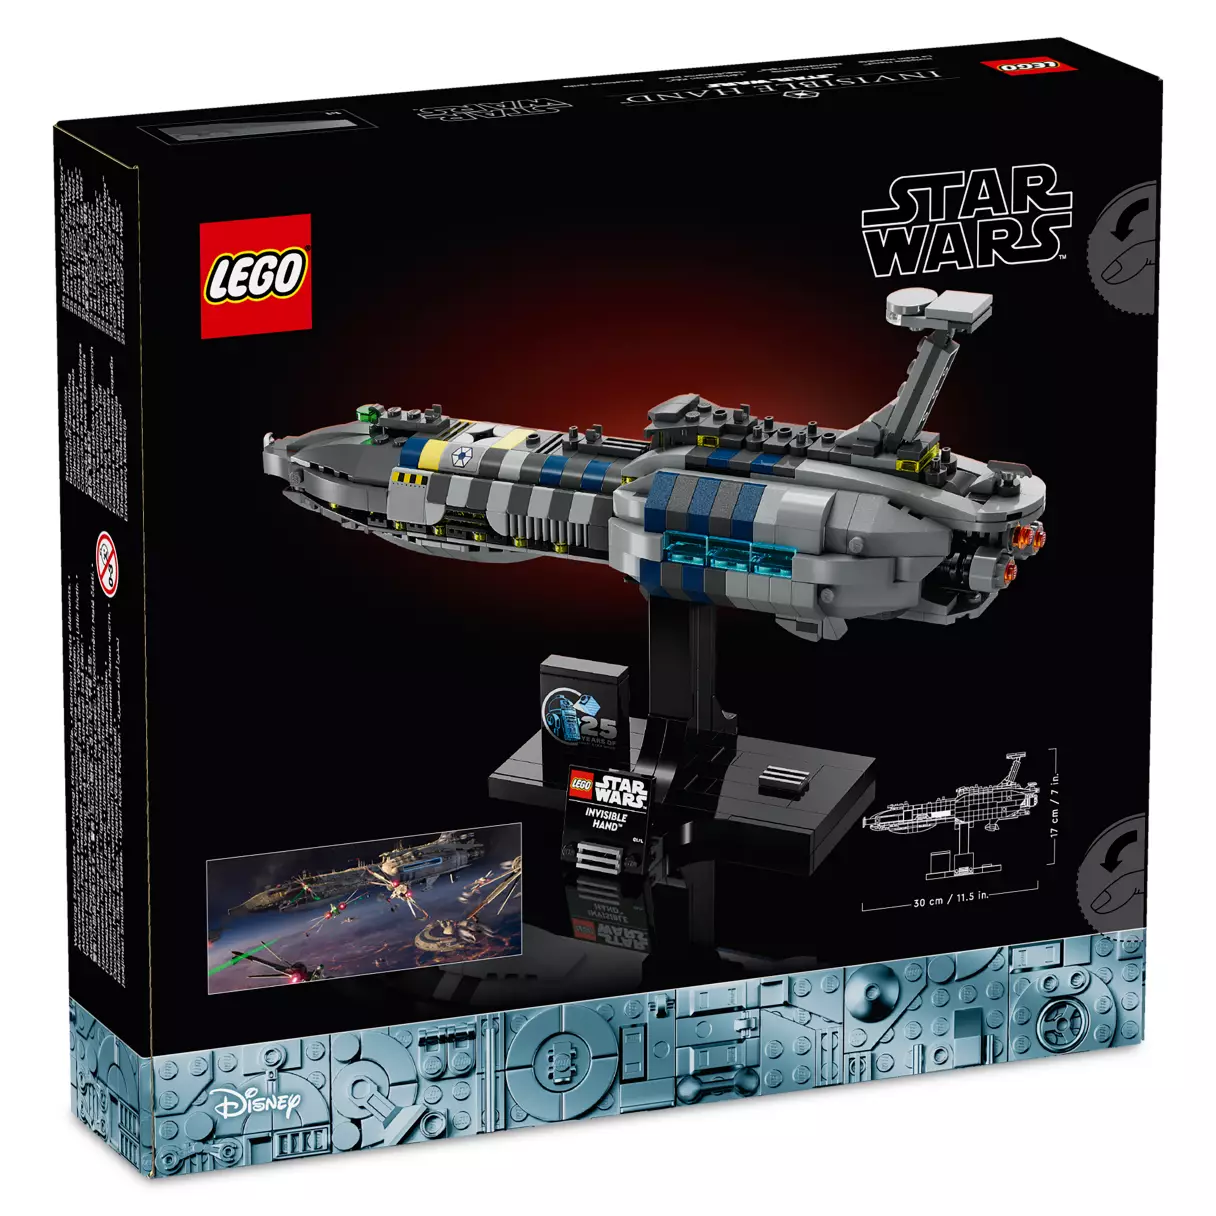 ROTS Invisible Hand Starship Lego Set 2